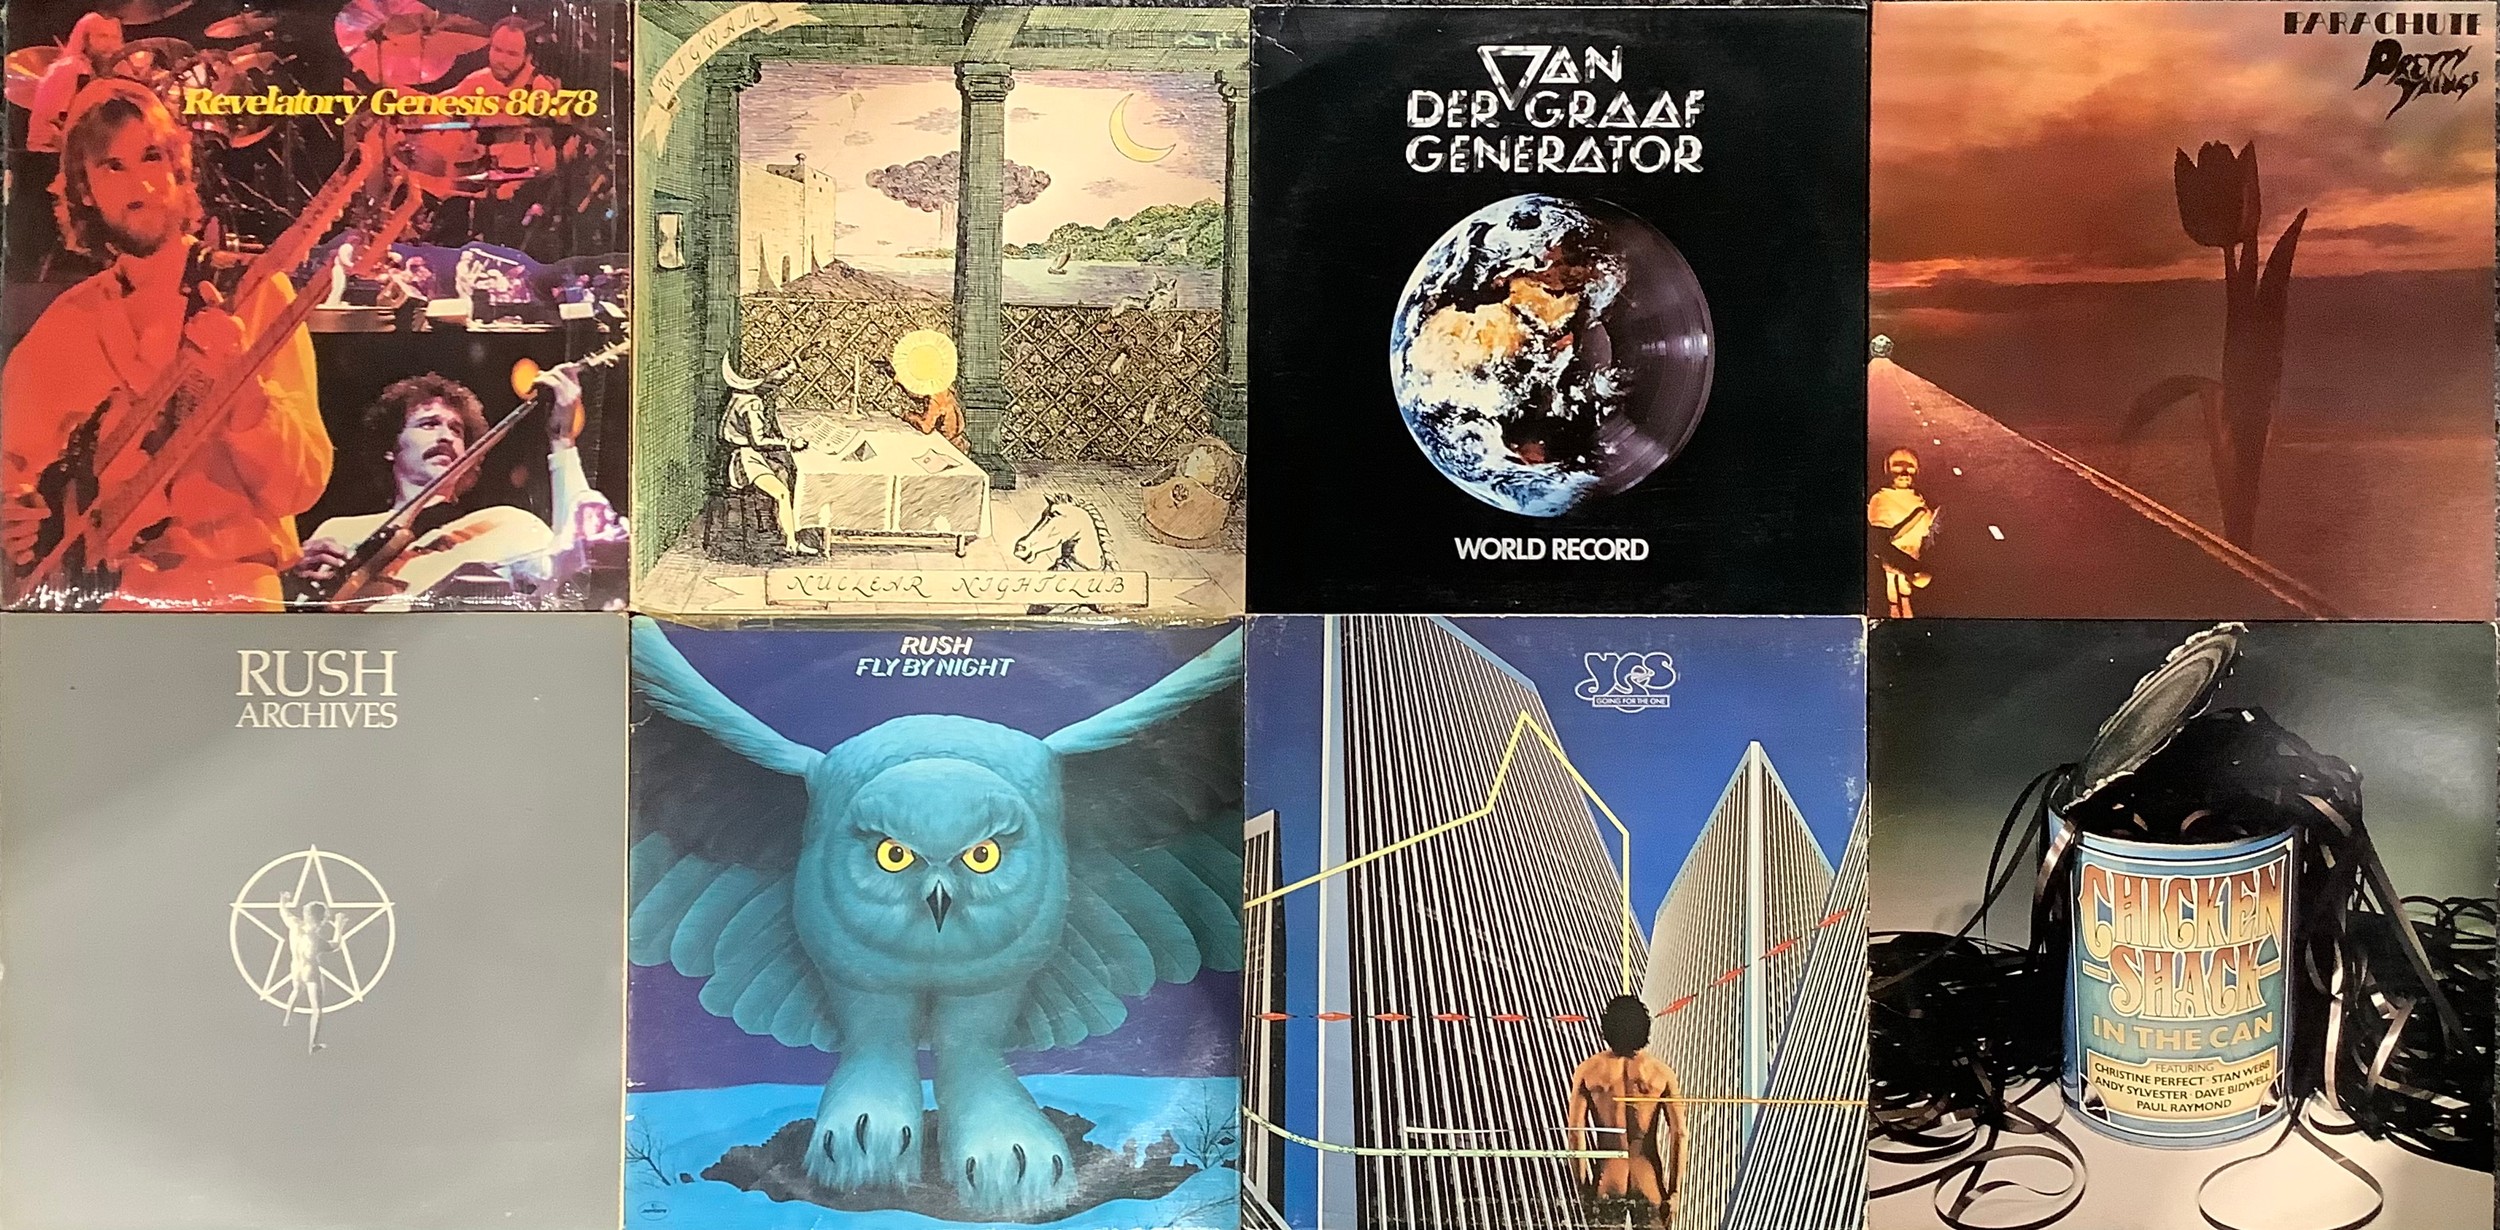 Vinyl Records - LP’s including – Genesis – Revelatory Genesis 80:78 – SR-80001; Van Der Graaf